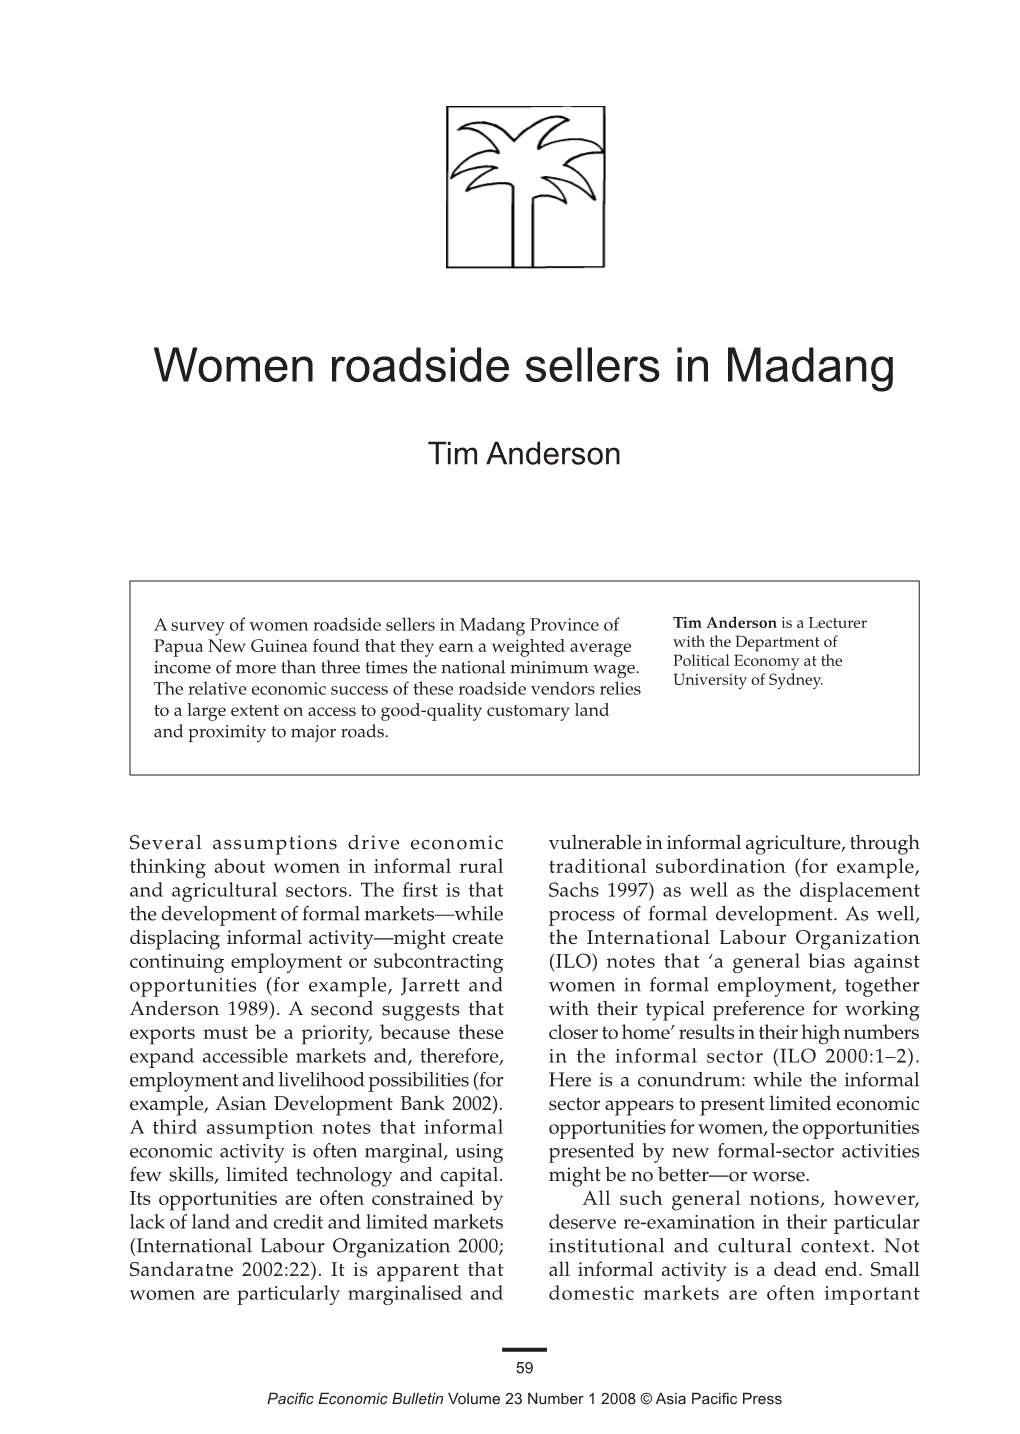 Women Roadside Sellers in Madang